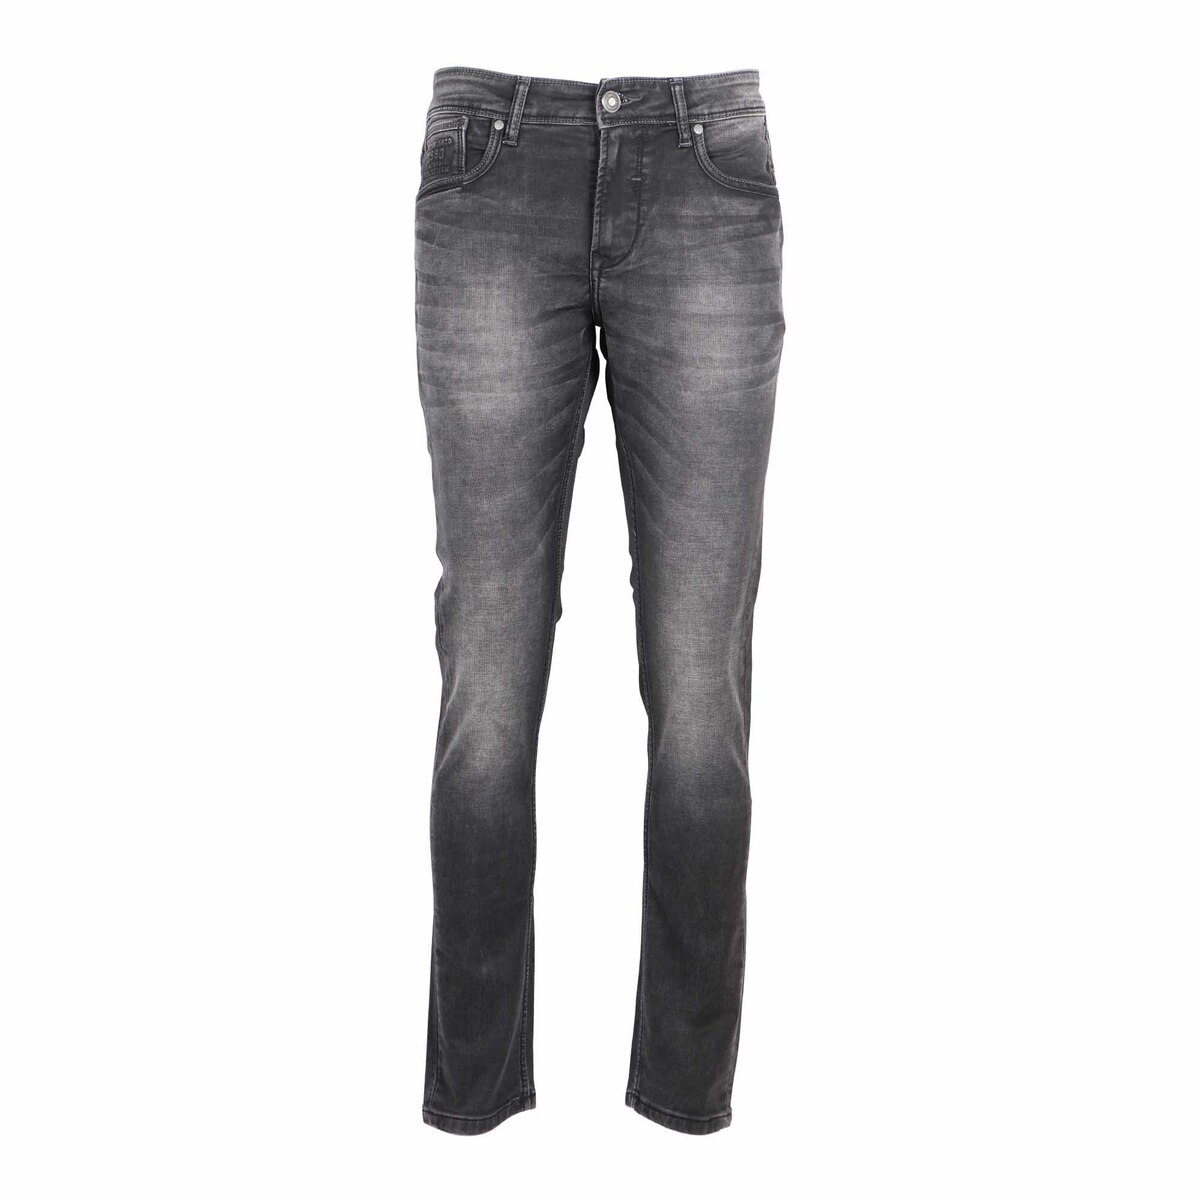 Sunnex Men's Slim Fit Jeans WR-21504 Dark Brown 32